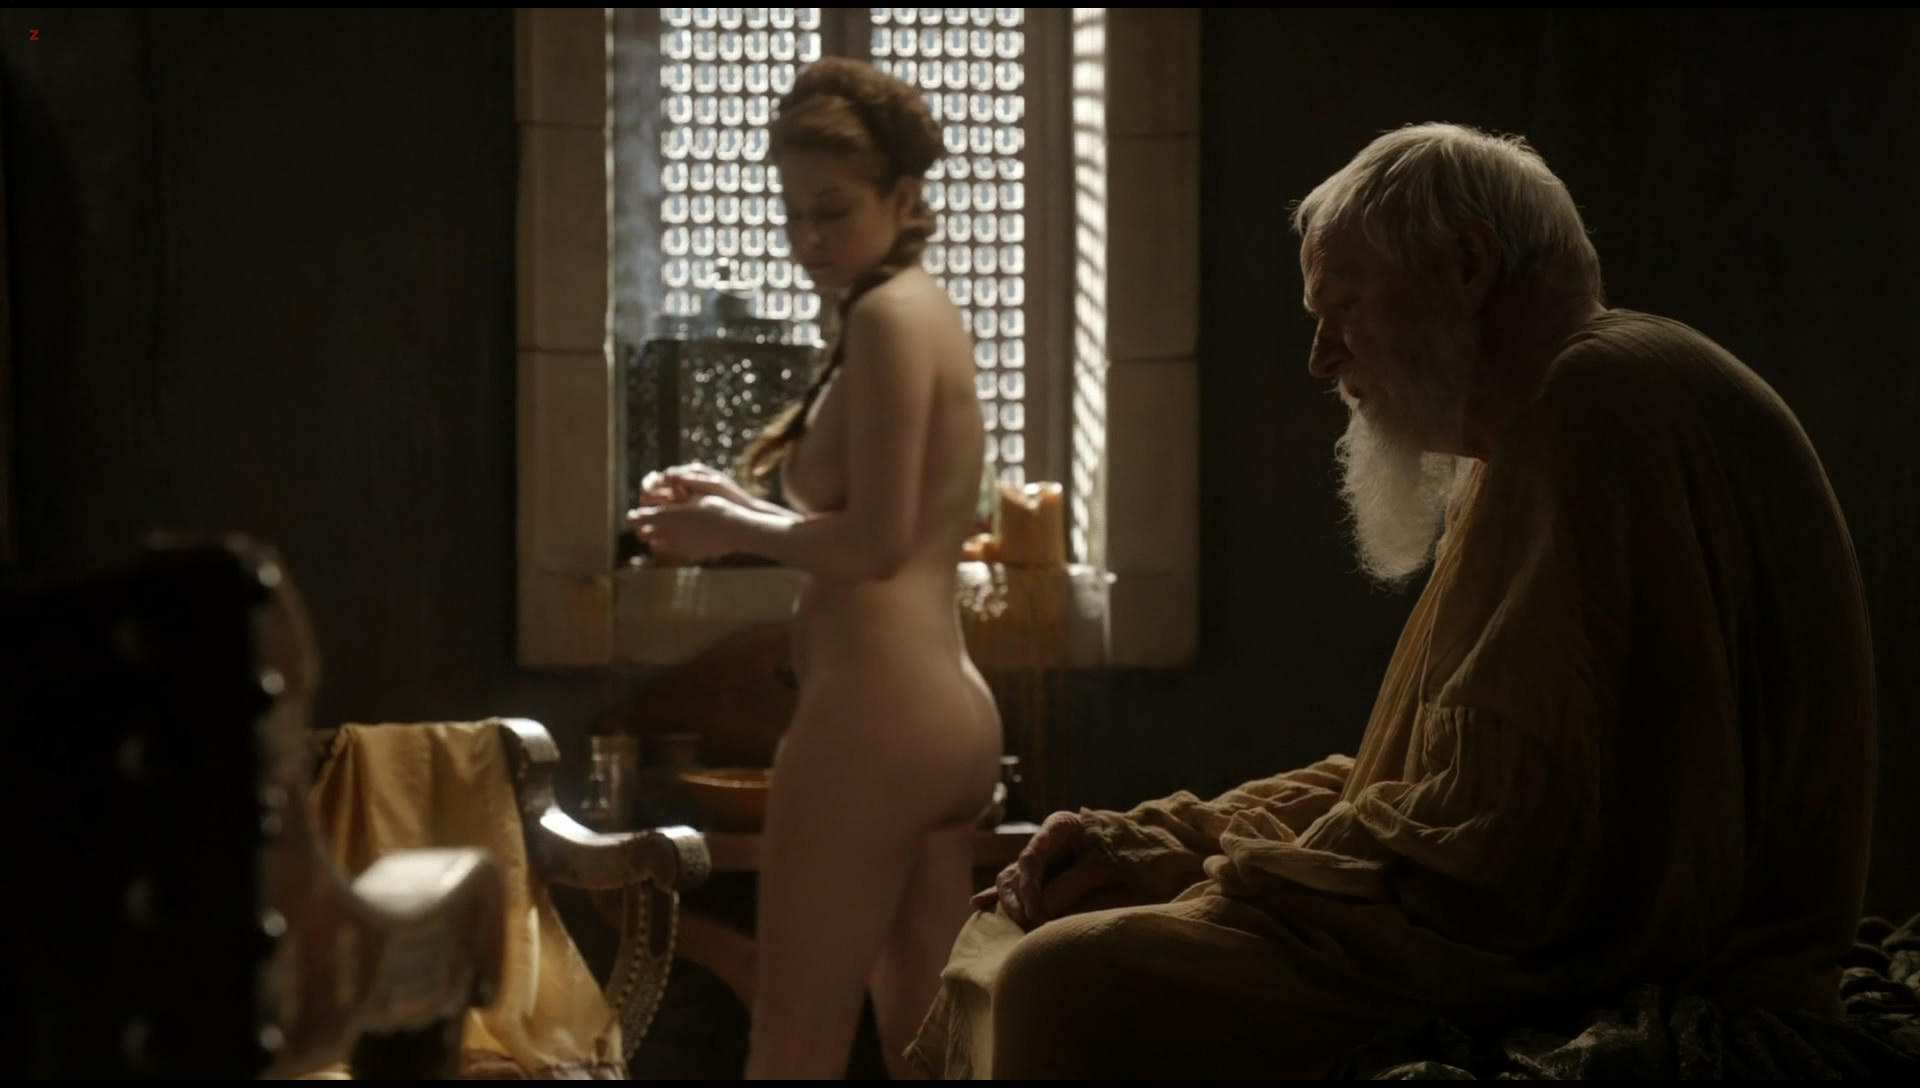 Esmé Bianco full nude in"Game of Thrones" s01e10 hdtv1080p